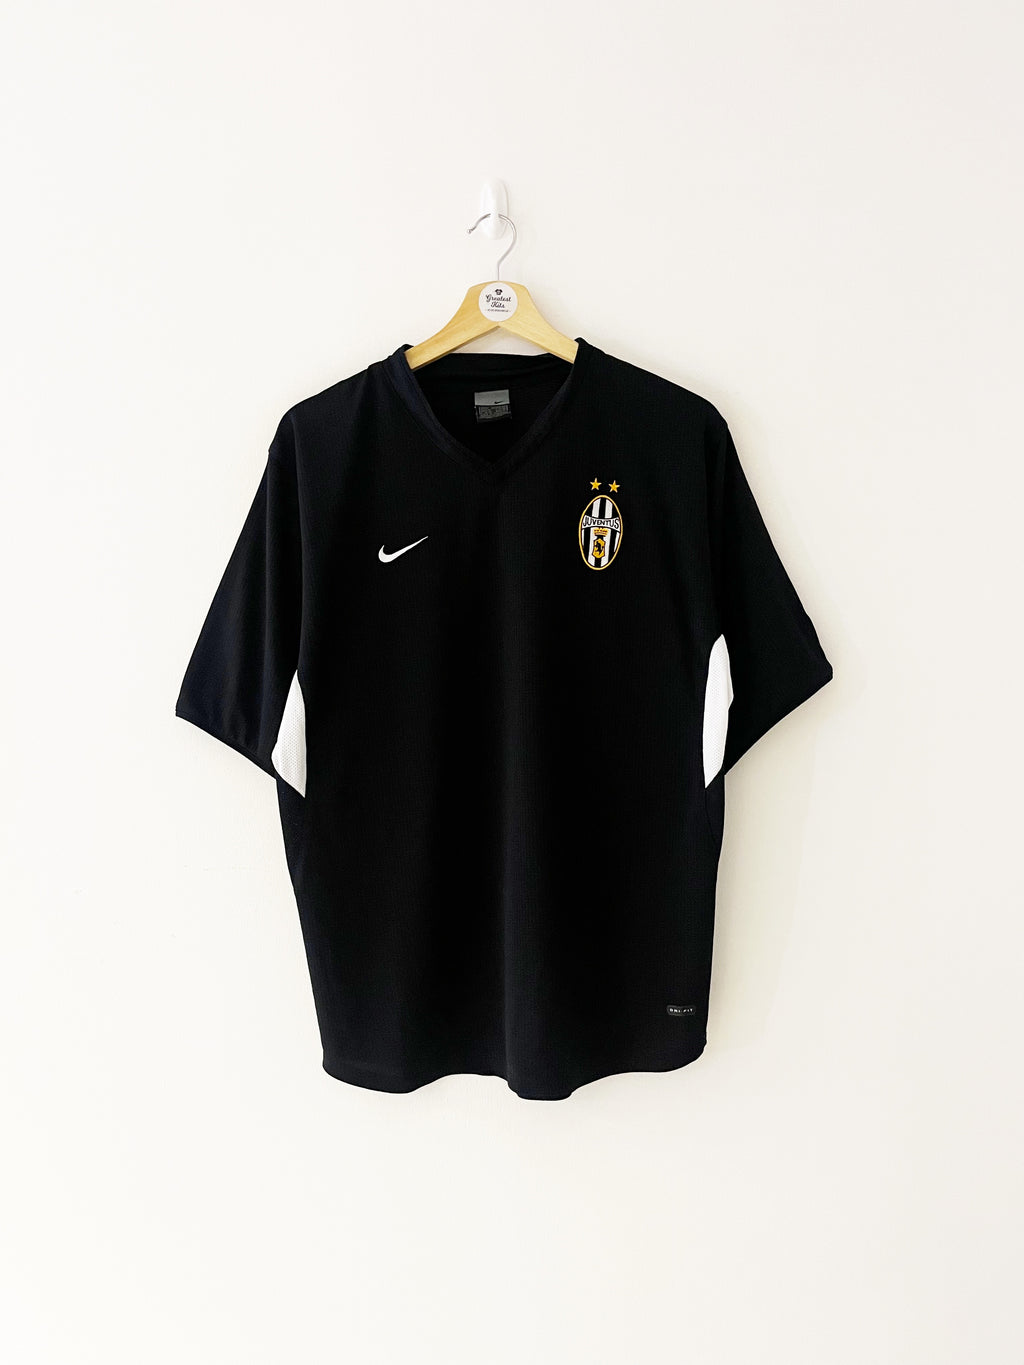 2003/04 Juventus Training Shirt (M) 9/10